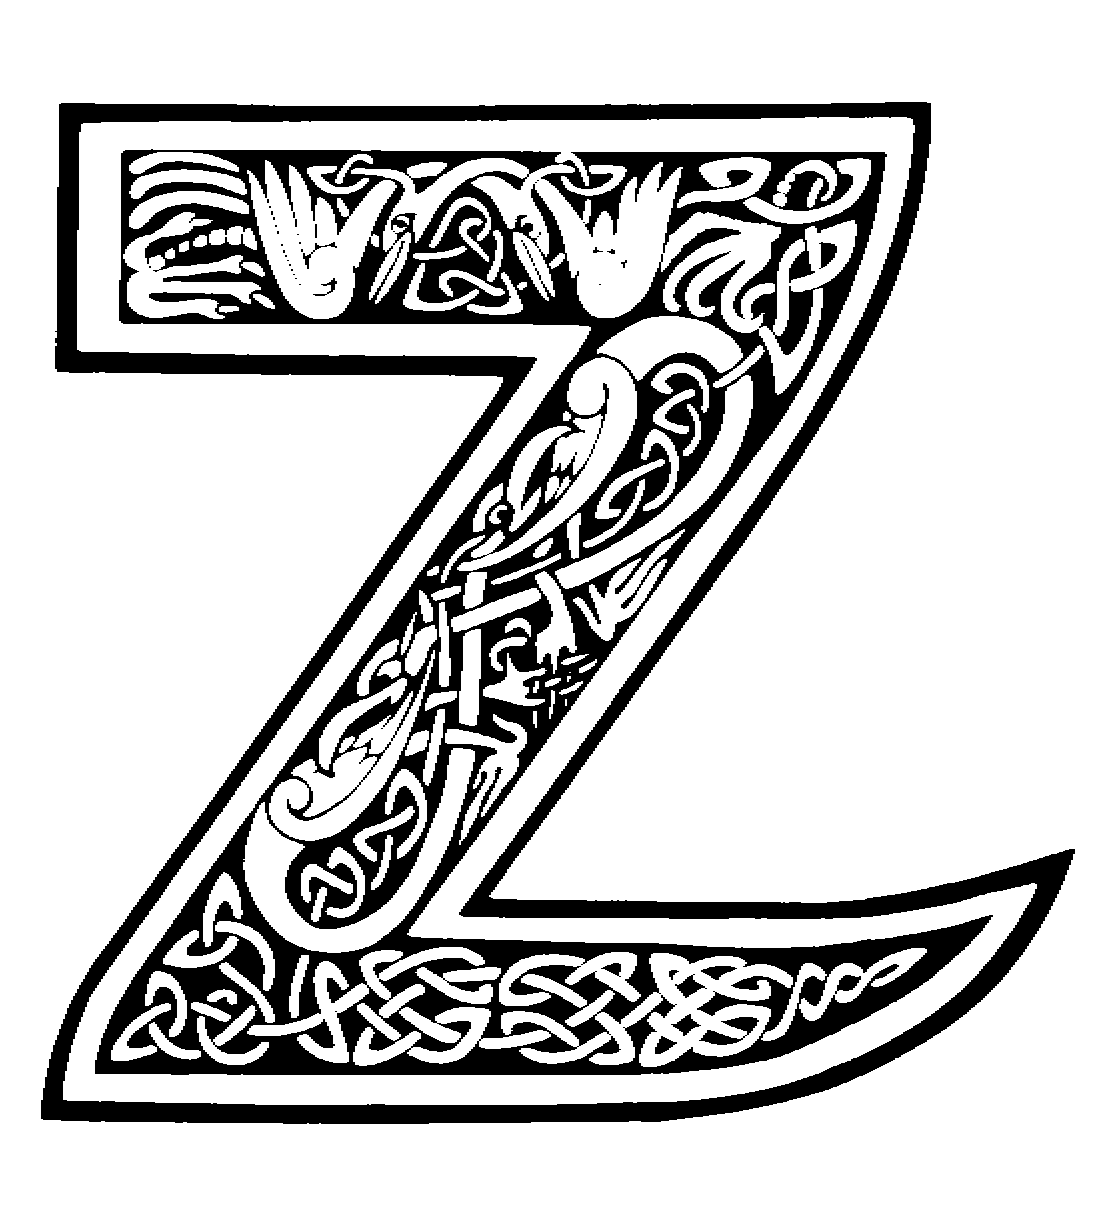 letter Z